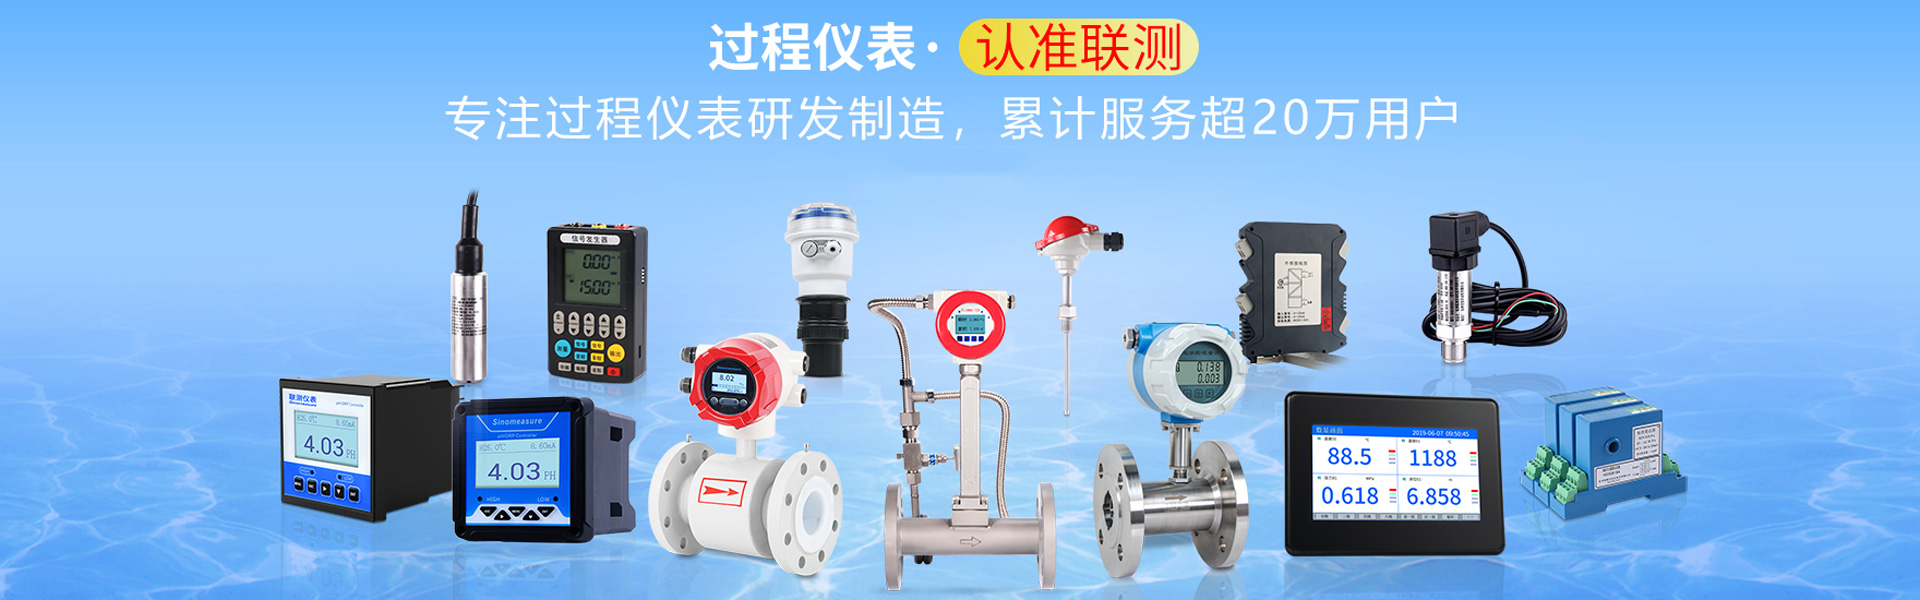 电磁流量计生产厂家-杭州联测自动化技术有限公司